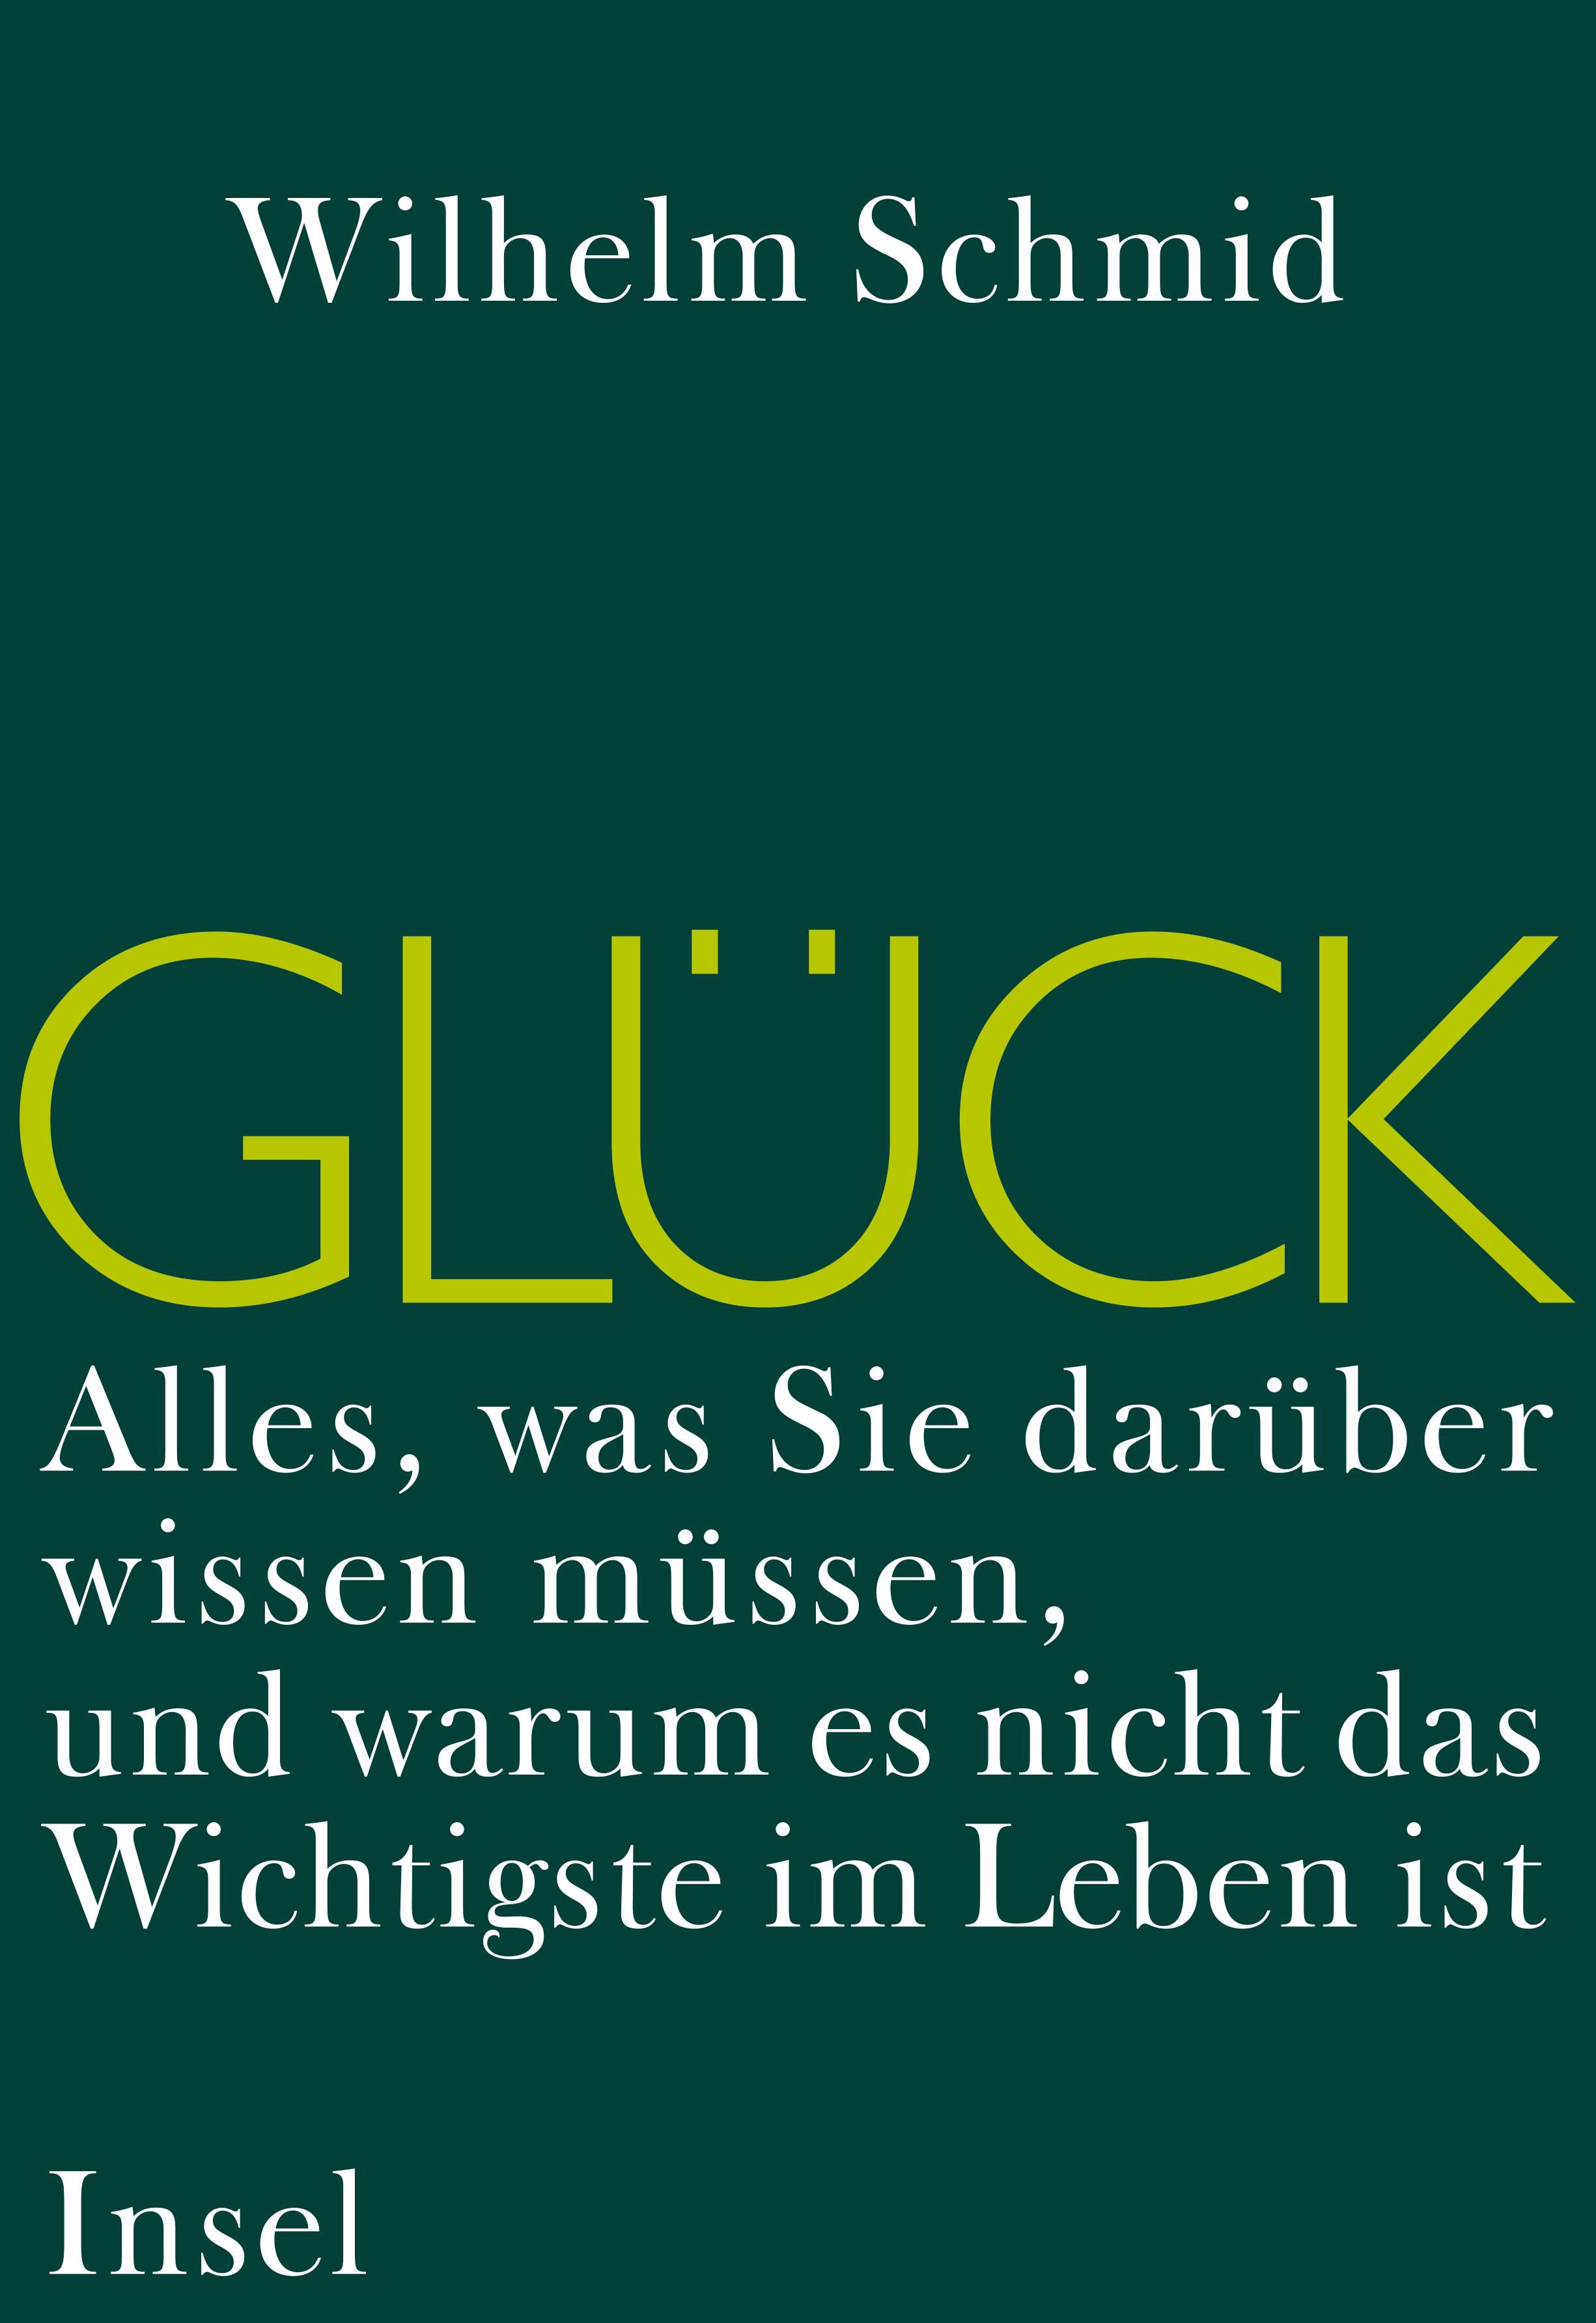 Glück. Buch von Wilhelm Schmid (Insel Verlag)